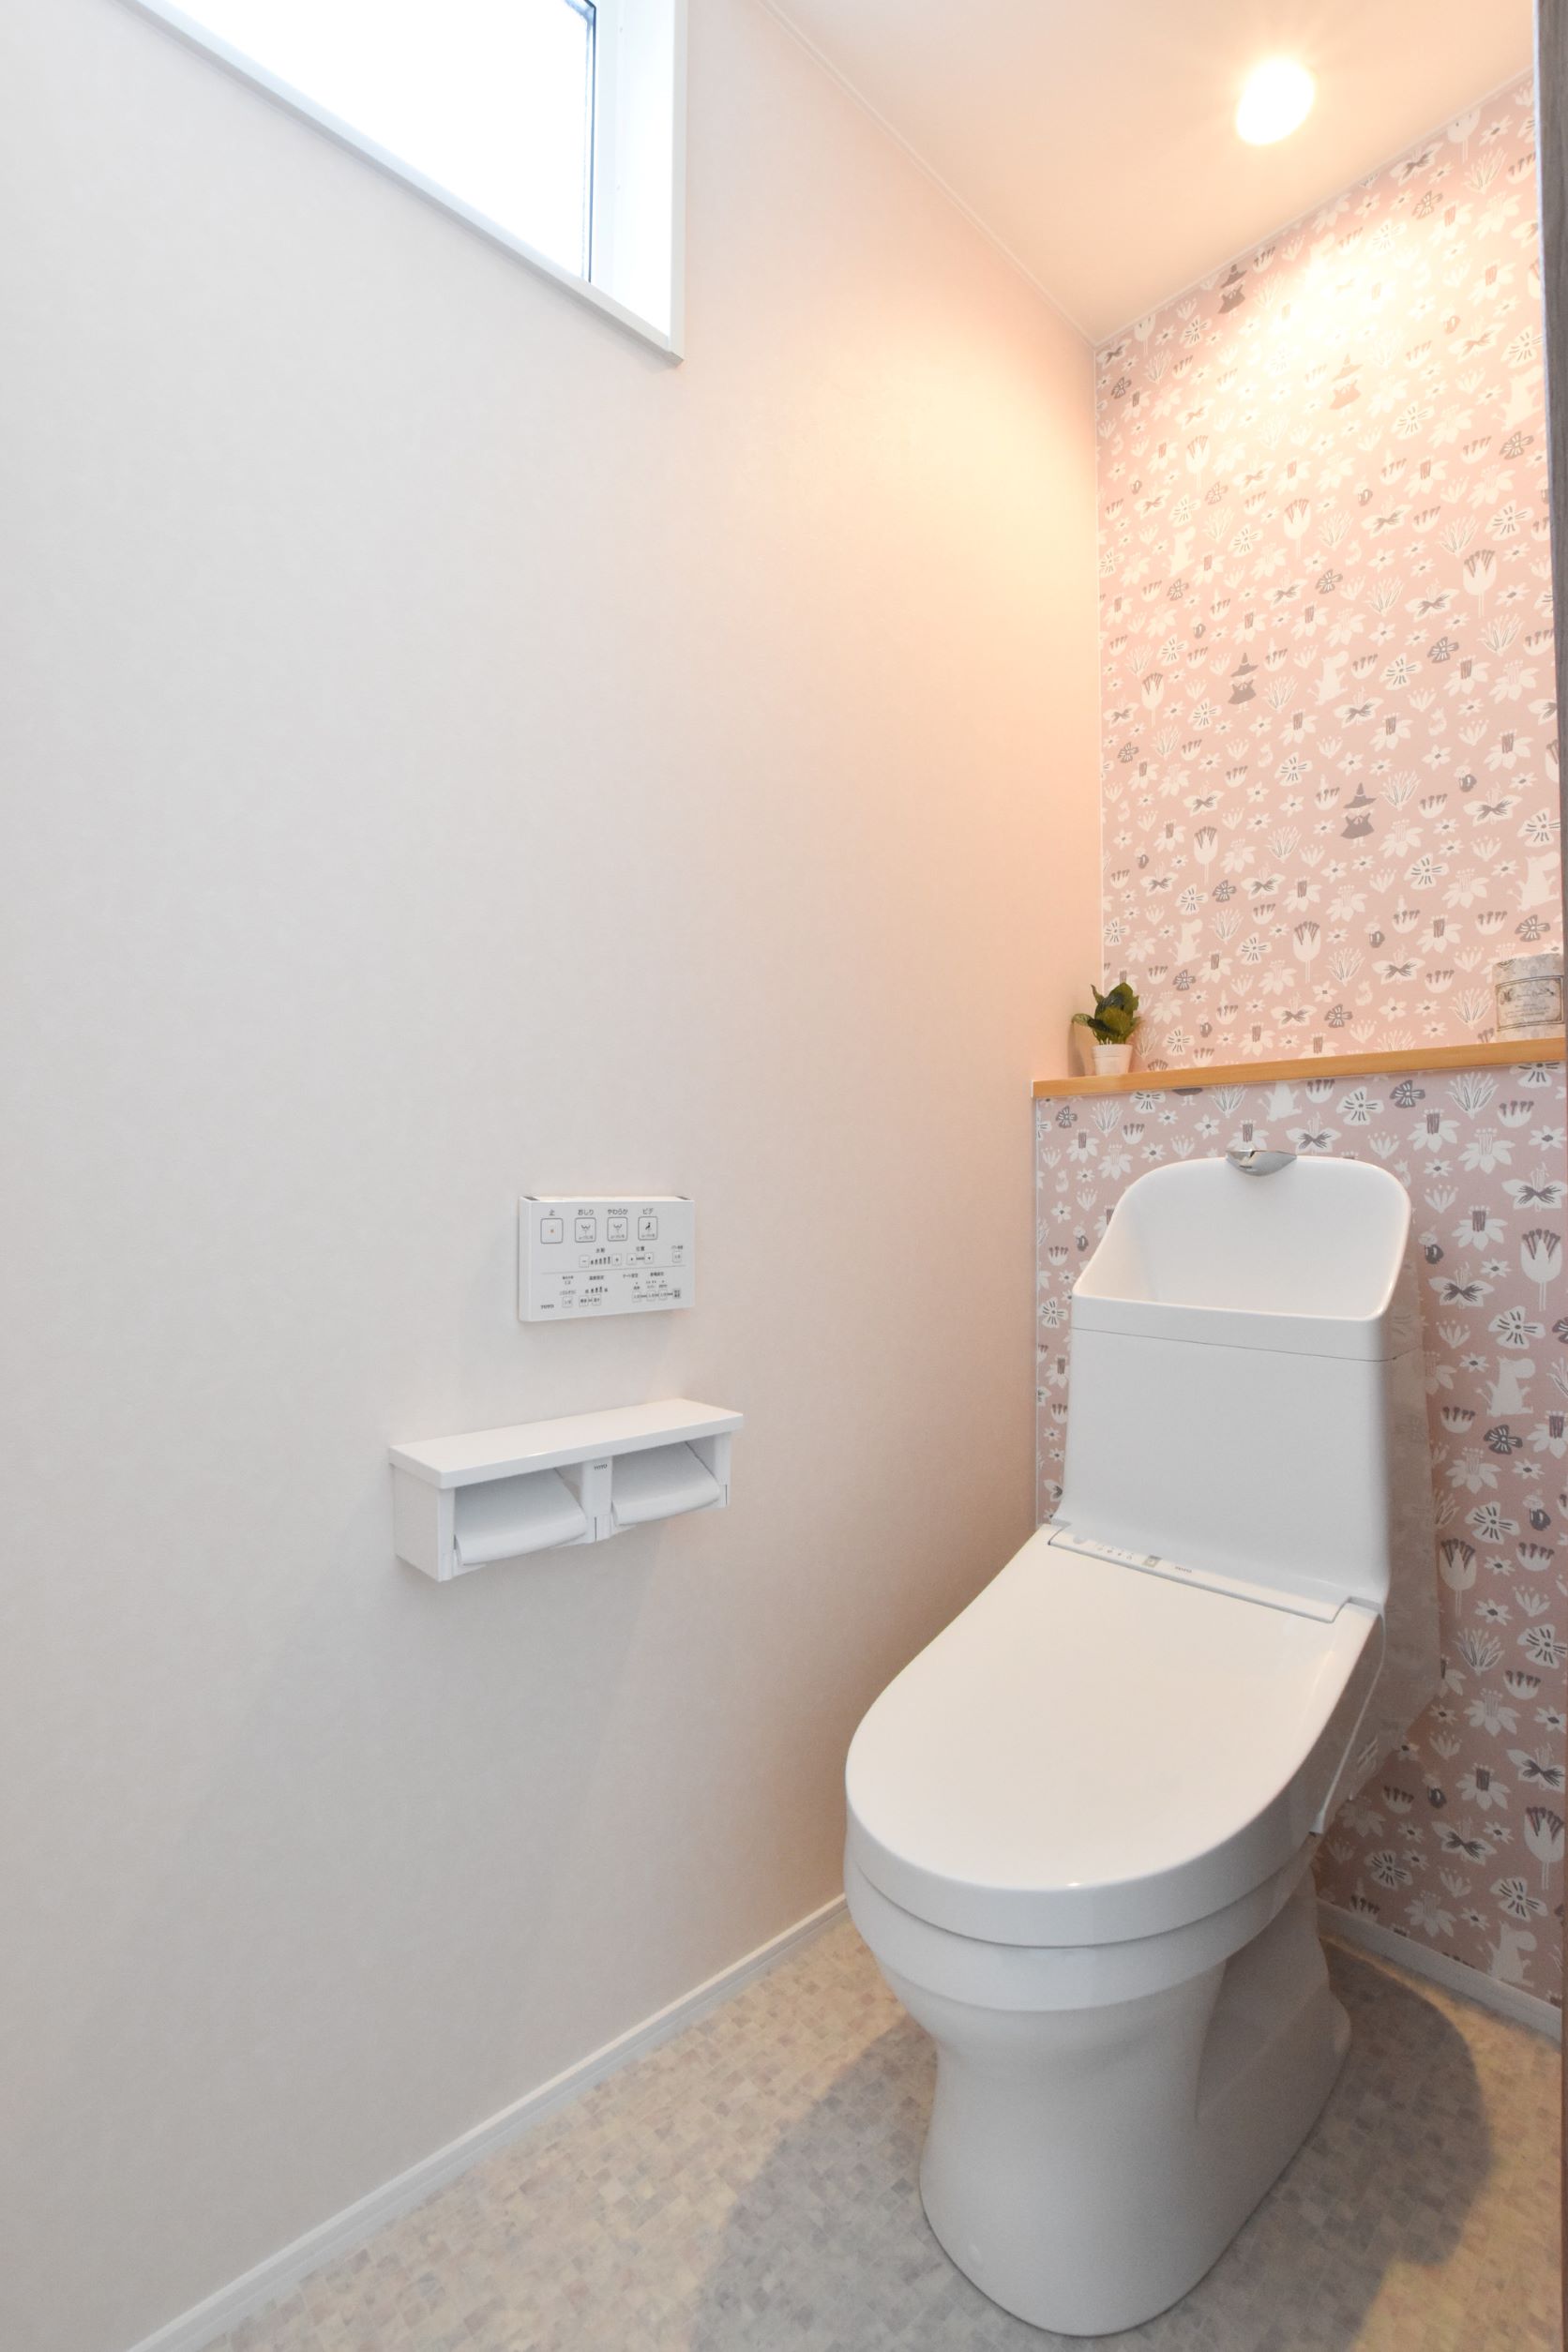 2Fのトイレはムーミンの壁紙を使ってにぎやかに。